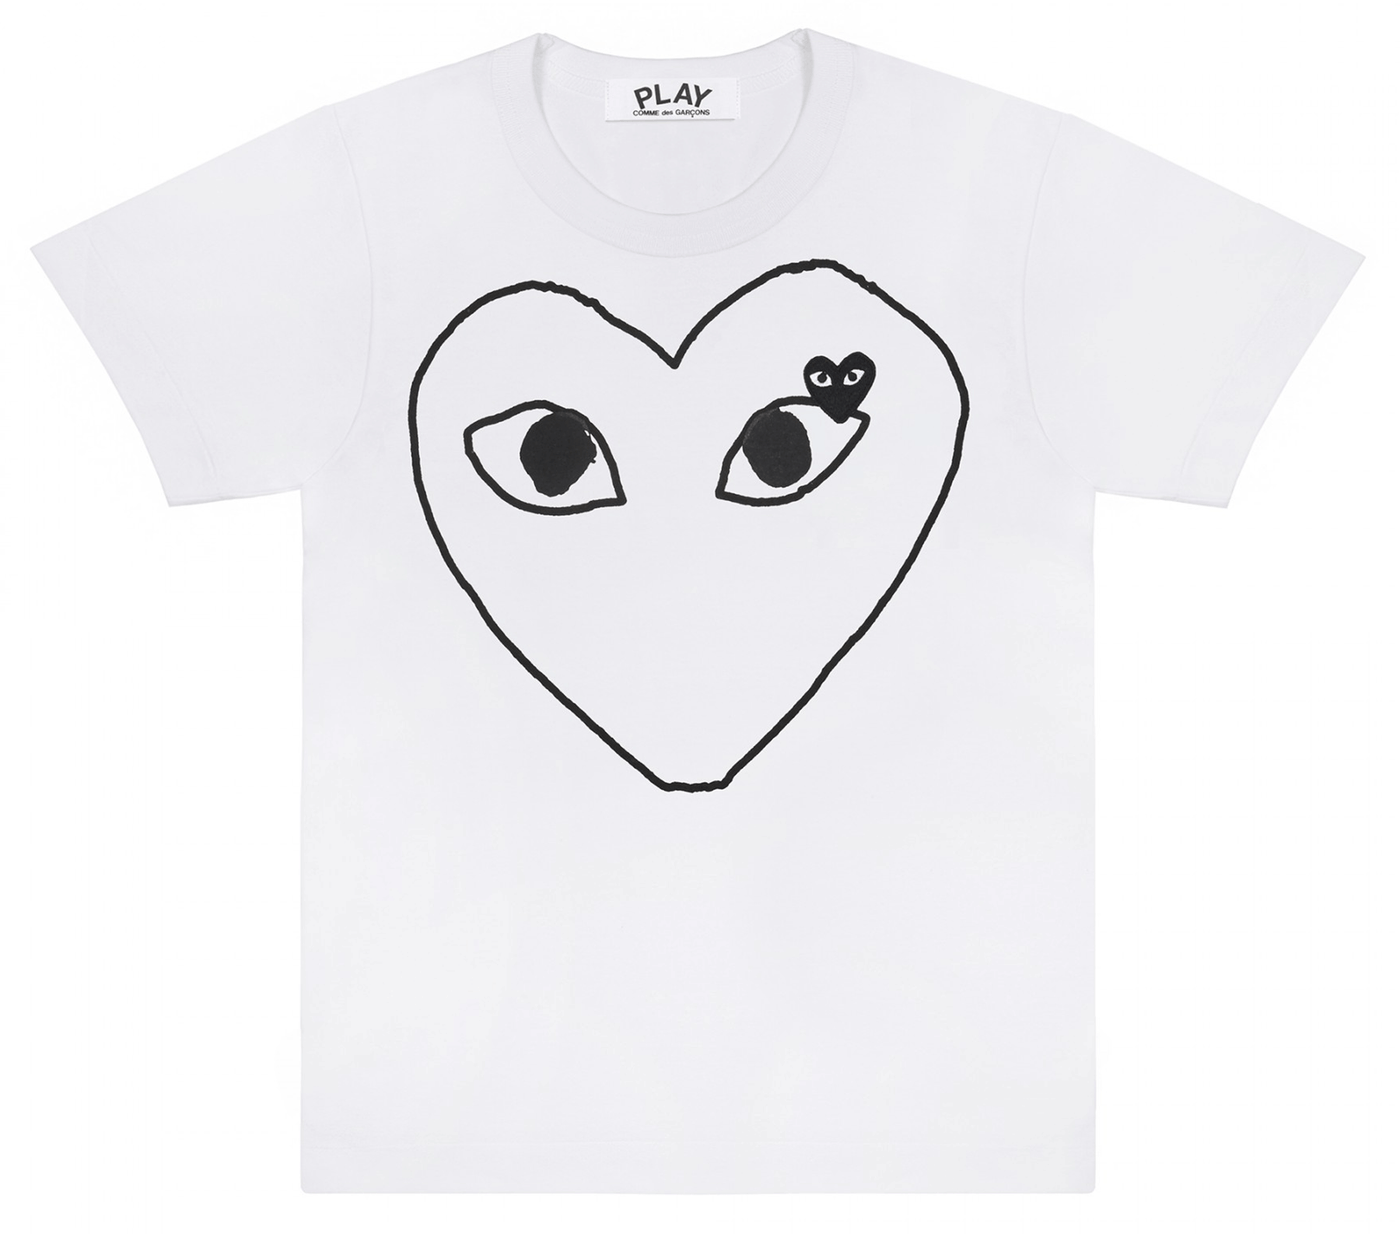 Comme-des-Garcons-Play-Black-Heart-Outline-T-Shirt-Men-White-1